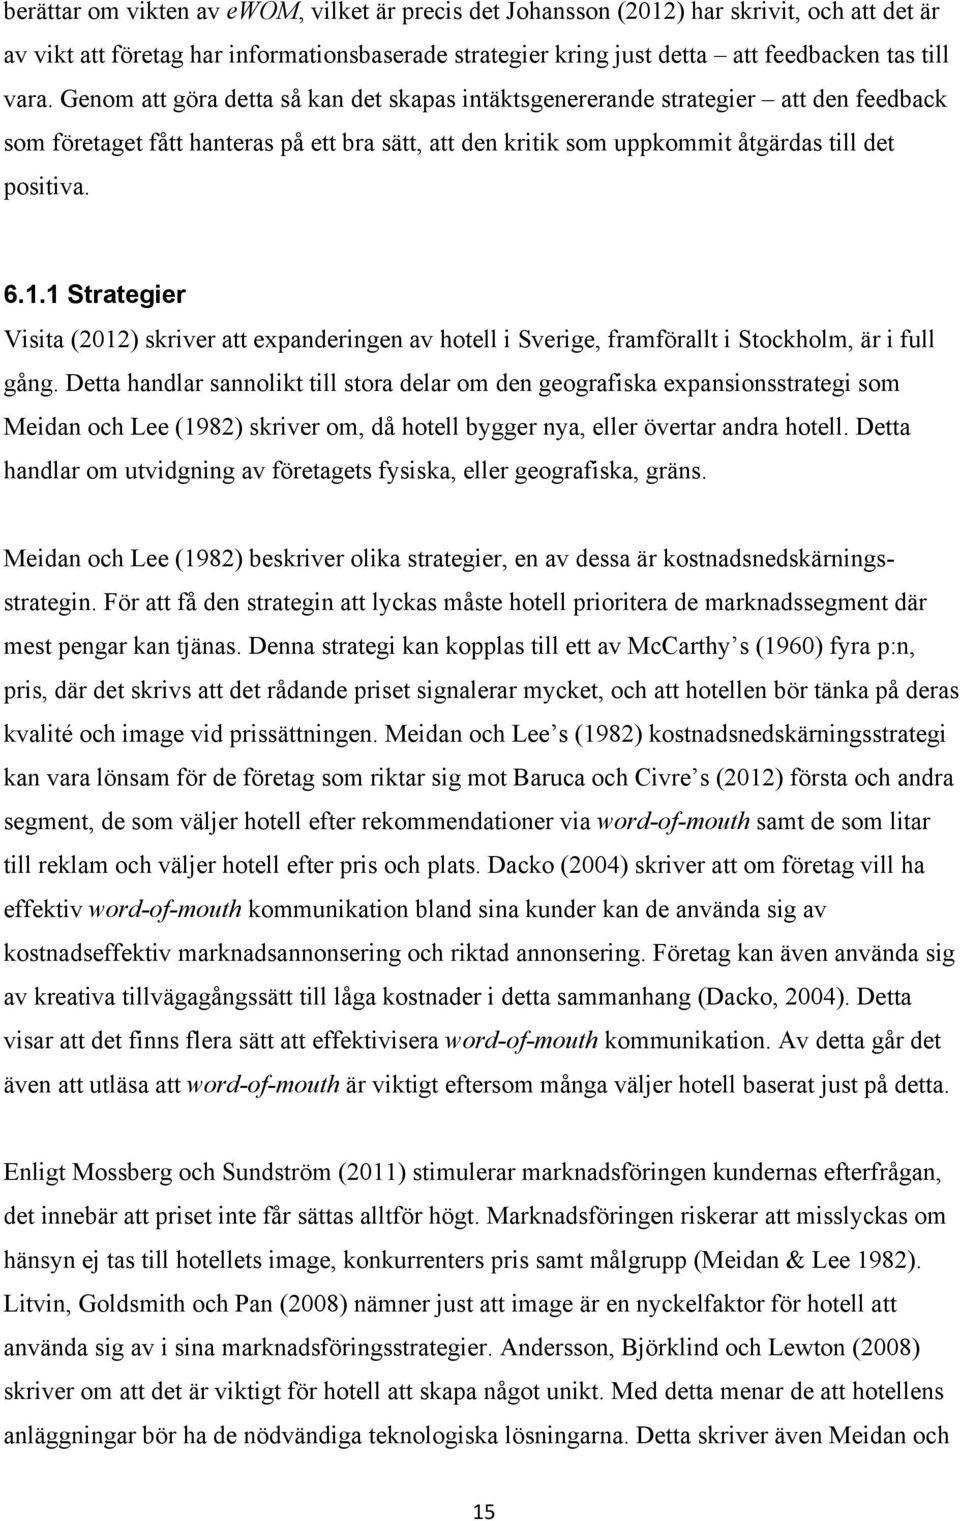 1 Strategier Visita (2012) skriver att expanderingen av hotell i Sverige, framförallt i Stockholm, är i full gång.